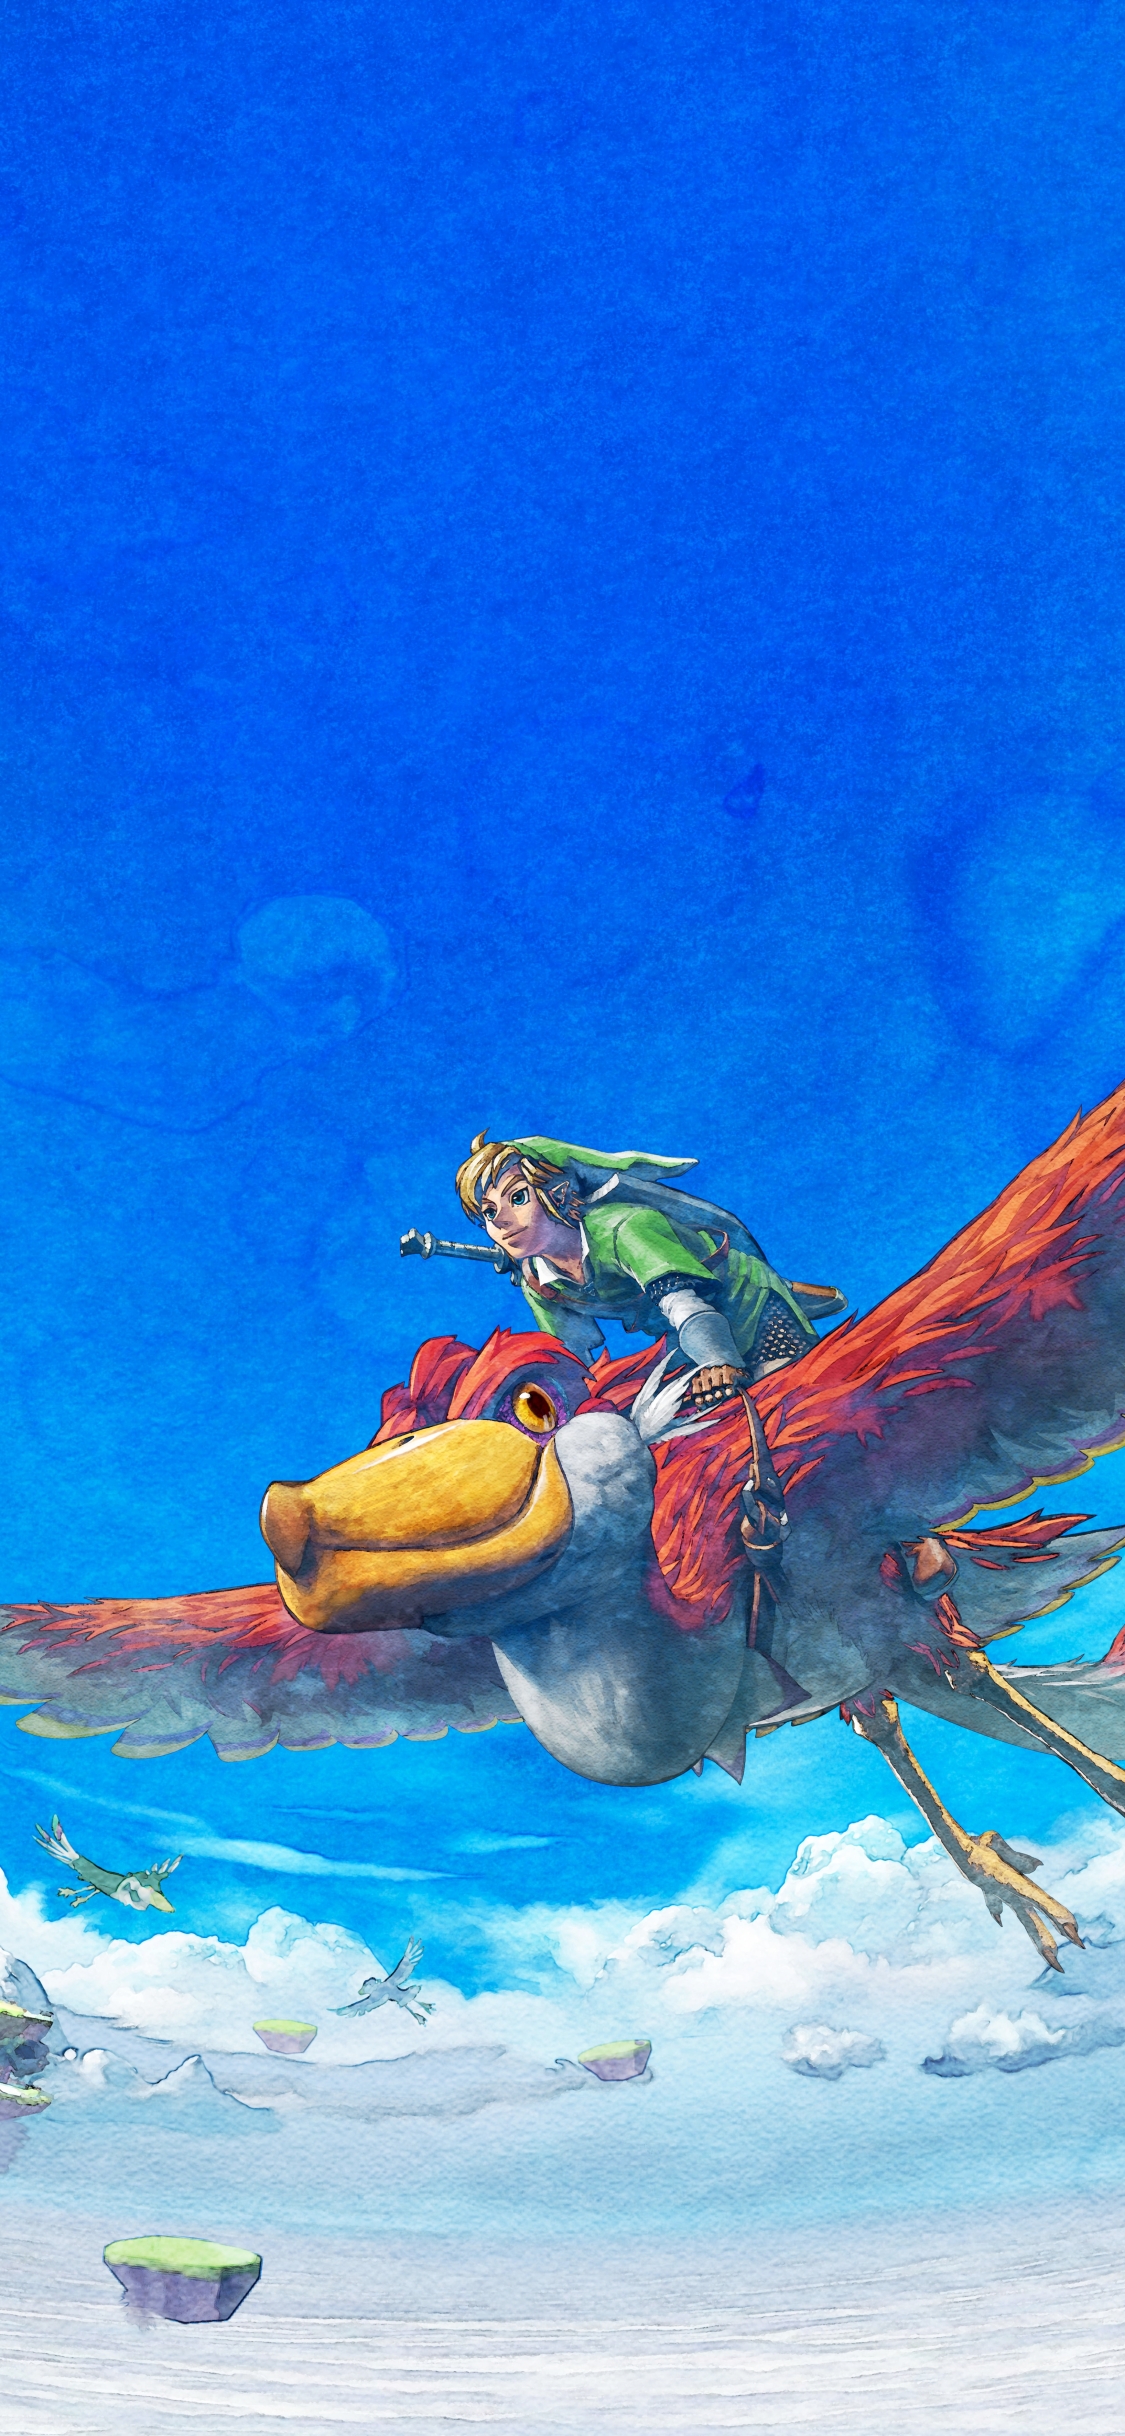 Descarga gratuita de fondo de pantalla para móvil de The Legend Of Zelda: Skyward Sword, Enlace, Zelda, Videojuego.